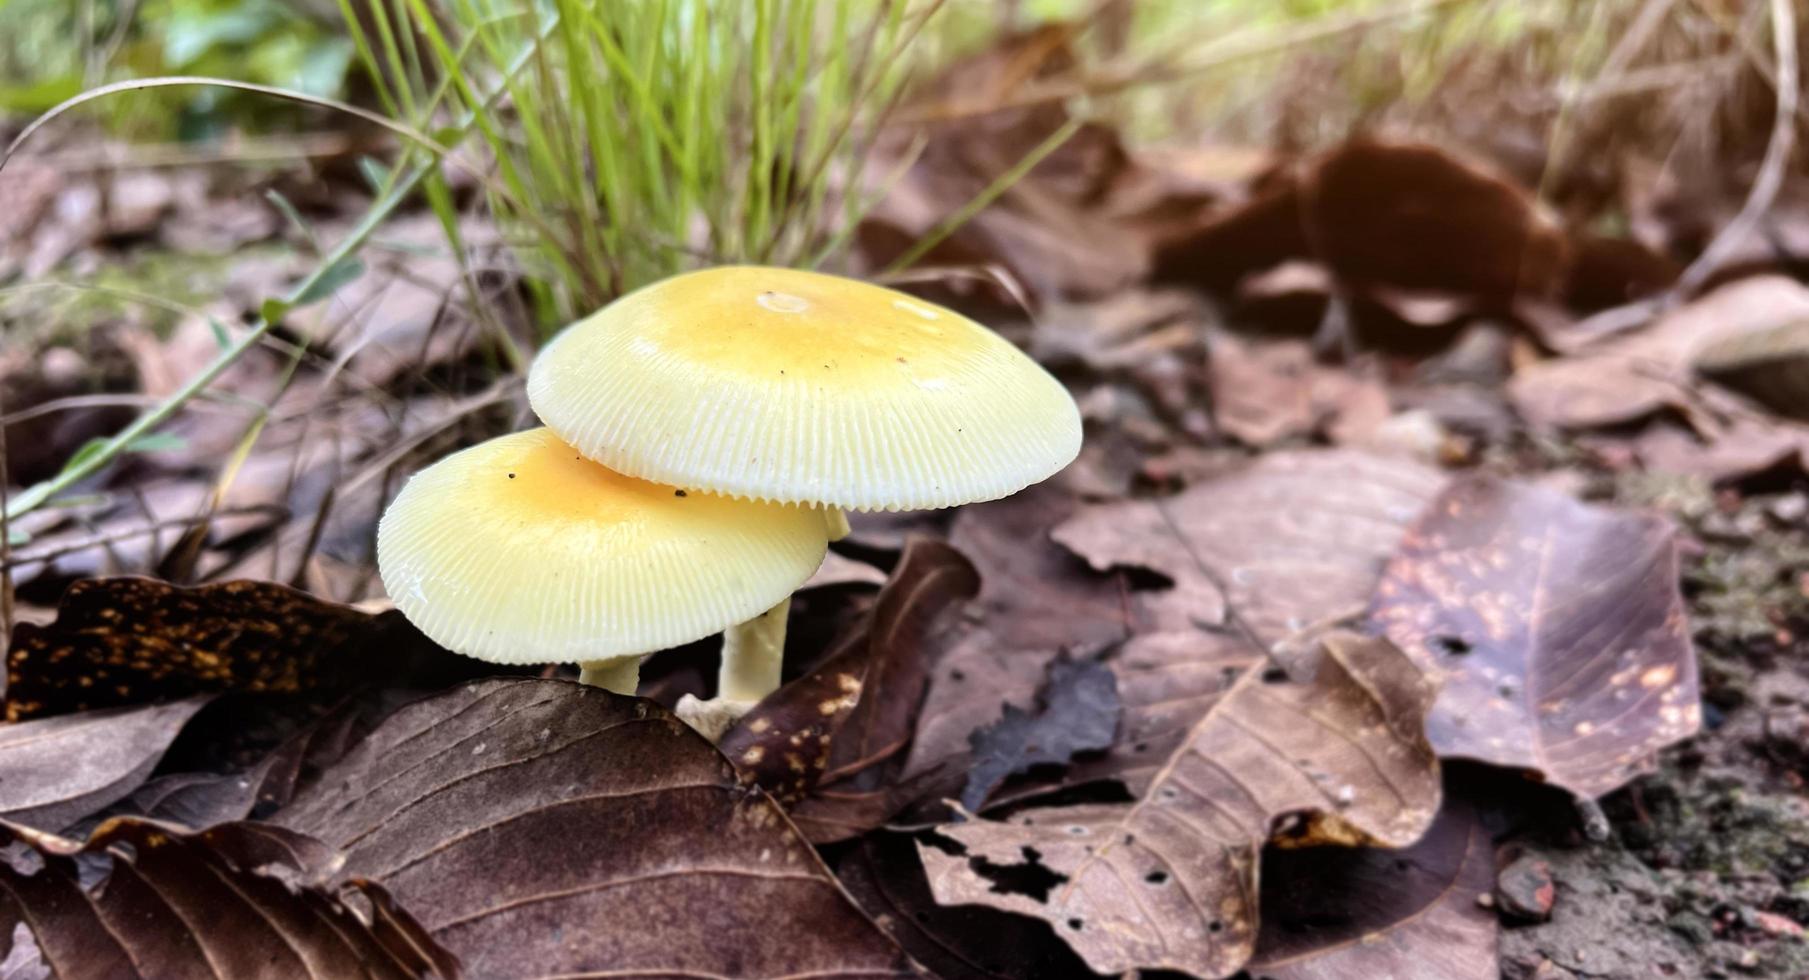 natuurlijke wilde paddenstoelen in Zuidoost-Azië die na regen op de grond in het bos voorkomen en die door mensen kunnen worden geplukt om voedsel te maken. foto